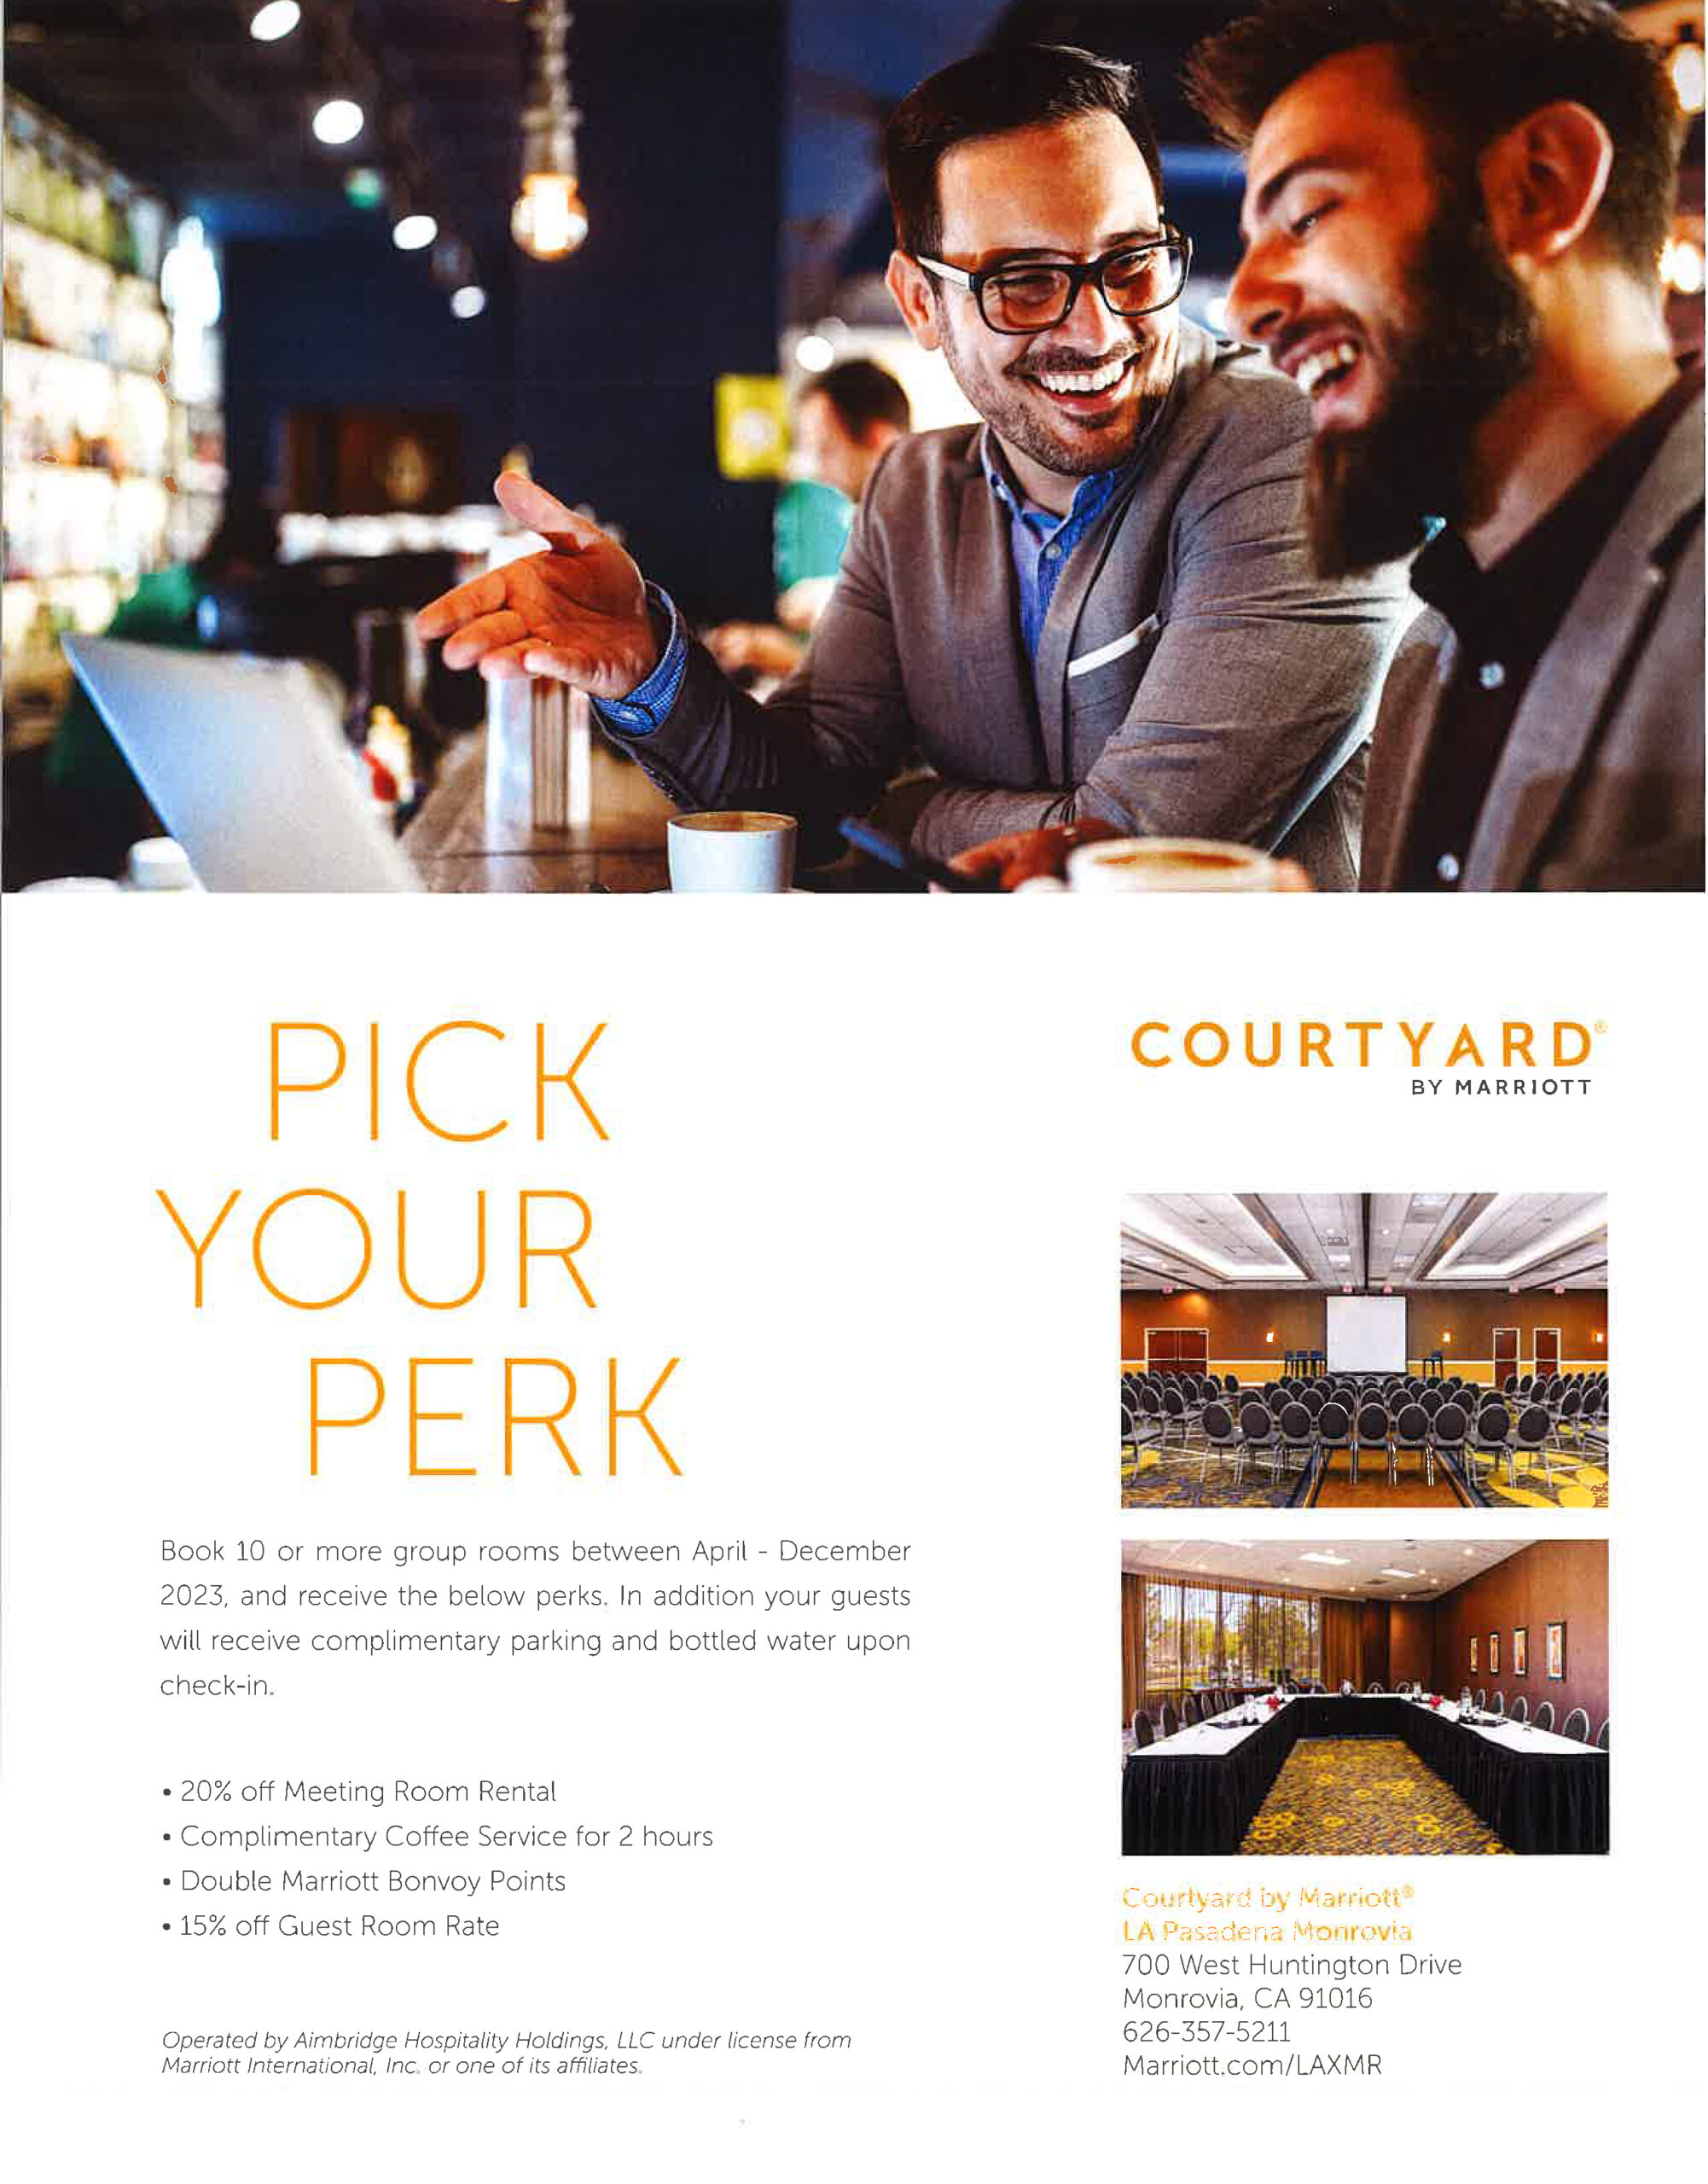 Courtyard Marriott pick your perk booking 